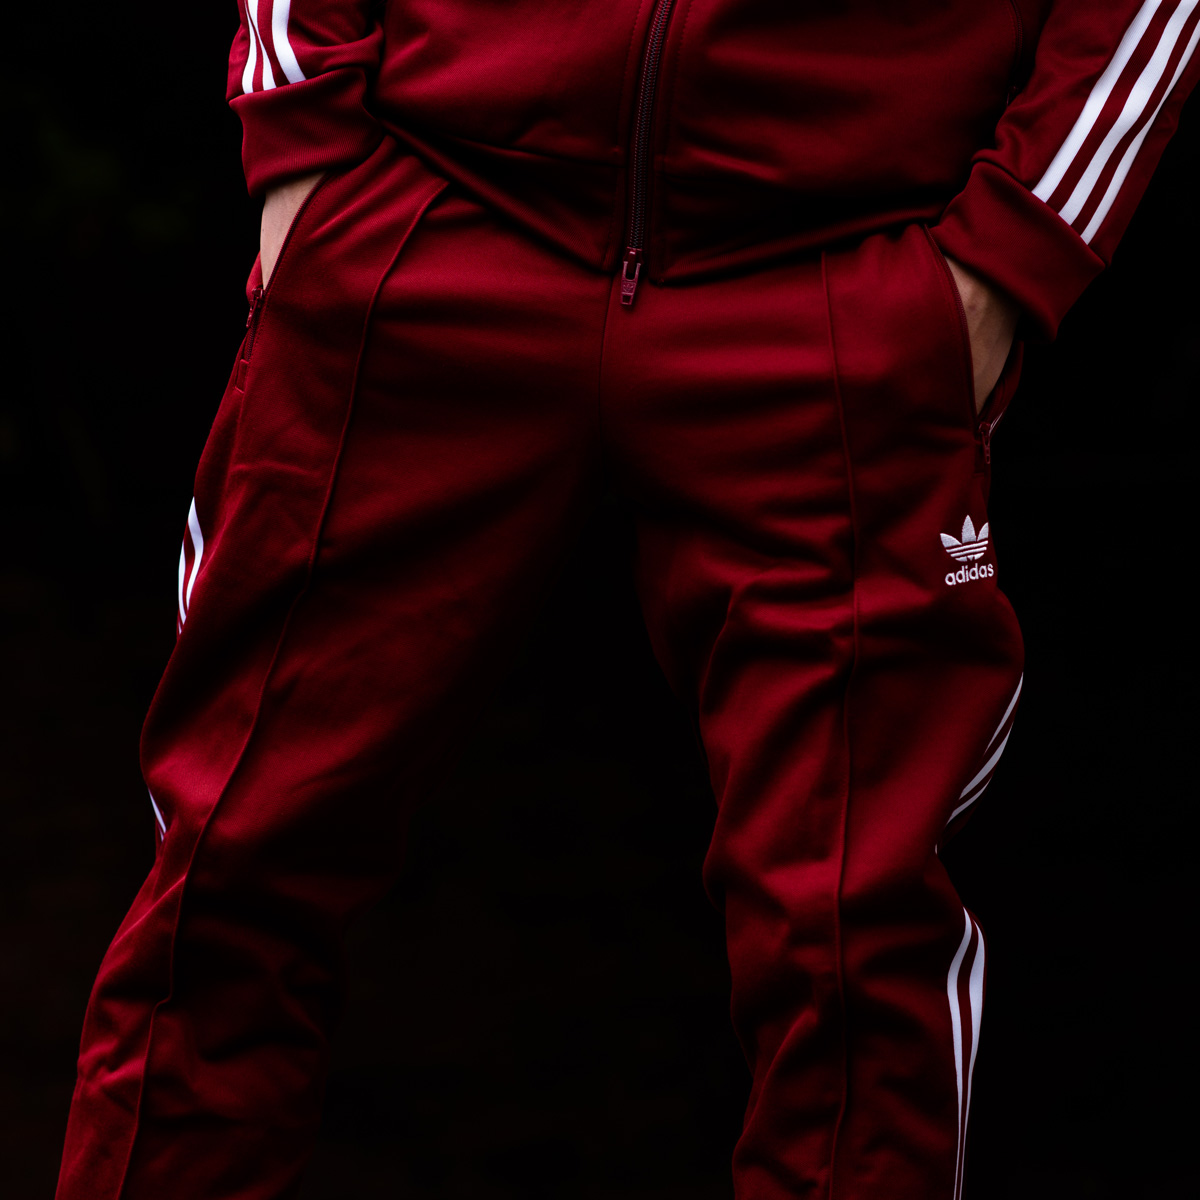 楽天市場 Adidas Originals Beckenbauer Track Pants アディダス オリジナルス ベッケンバウアー トラックパンツ Rust Red メンズ ジャージ 18ss S At C Atmos Tokyo